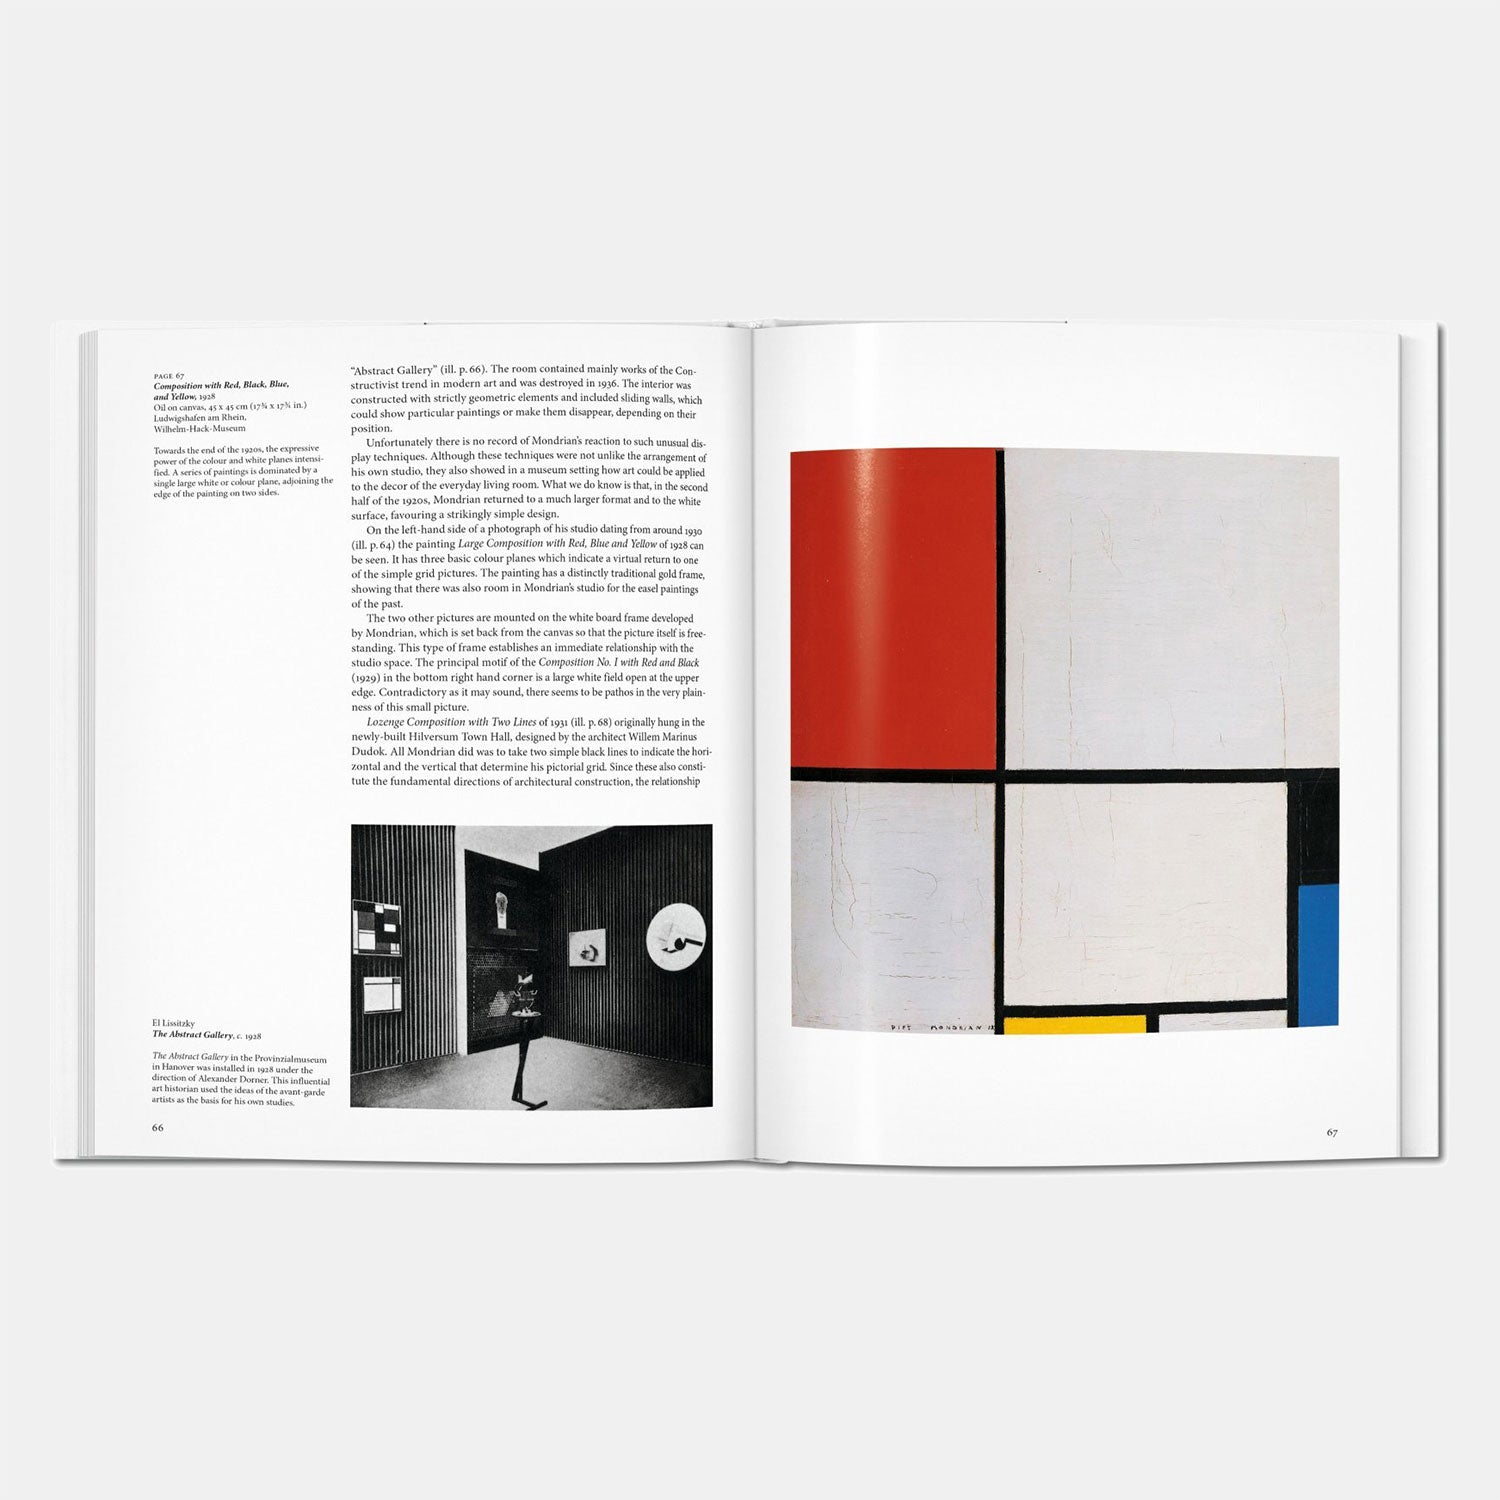 Mondrian art and design book by Taschen